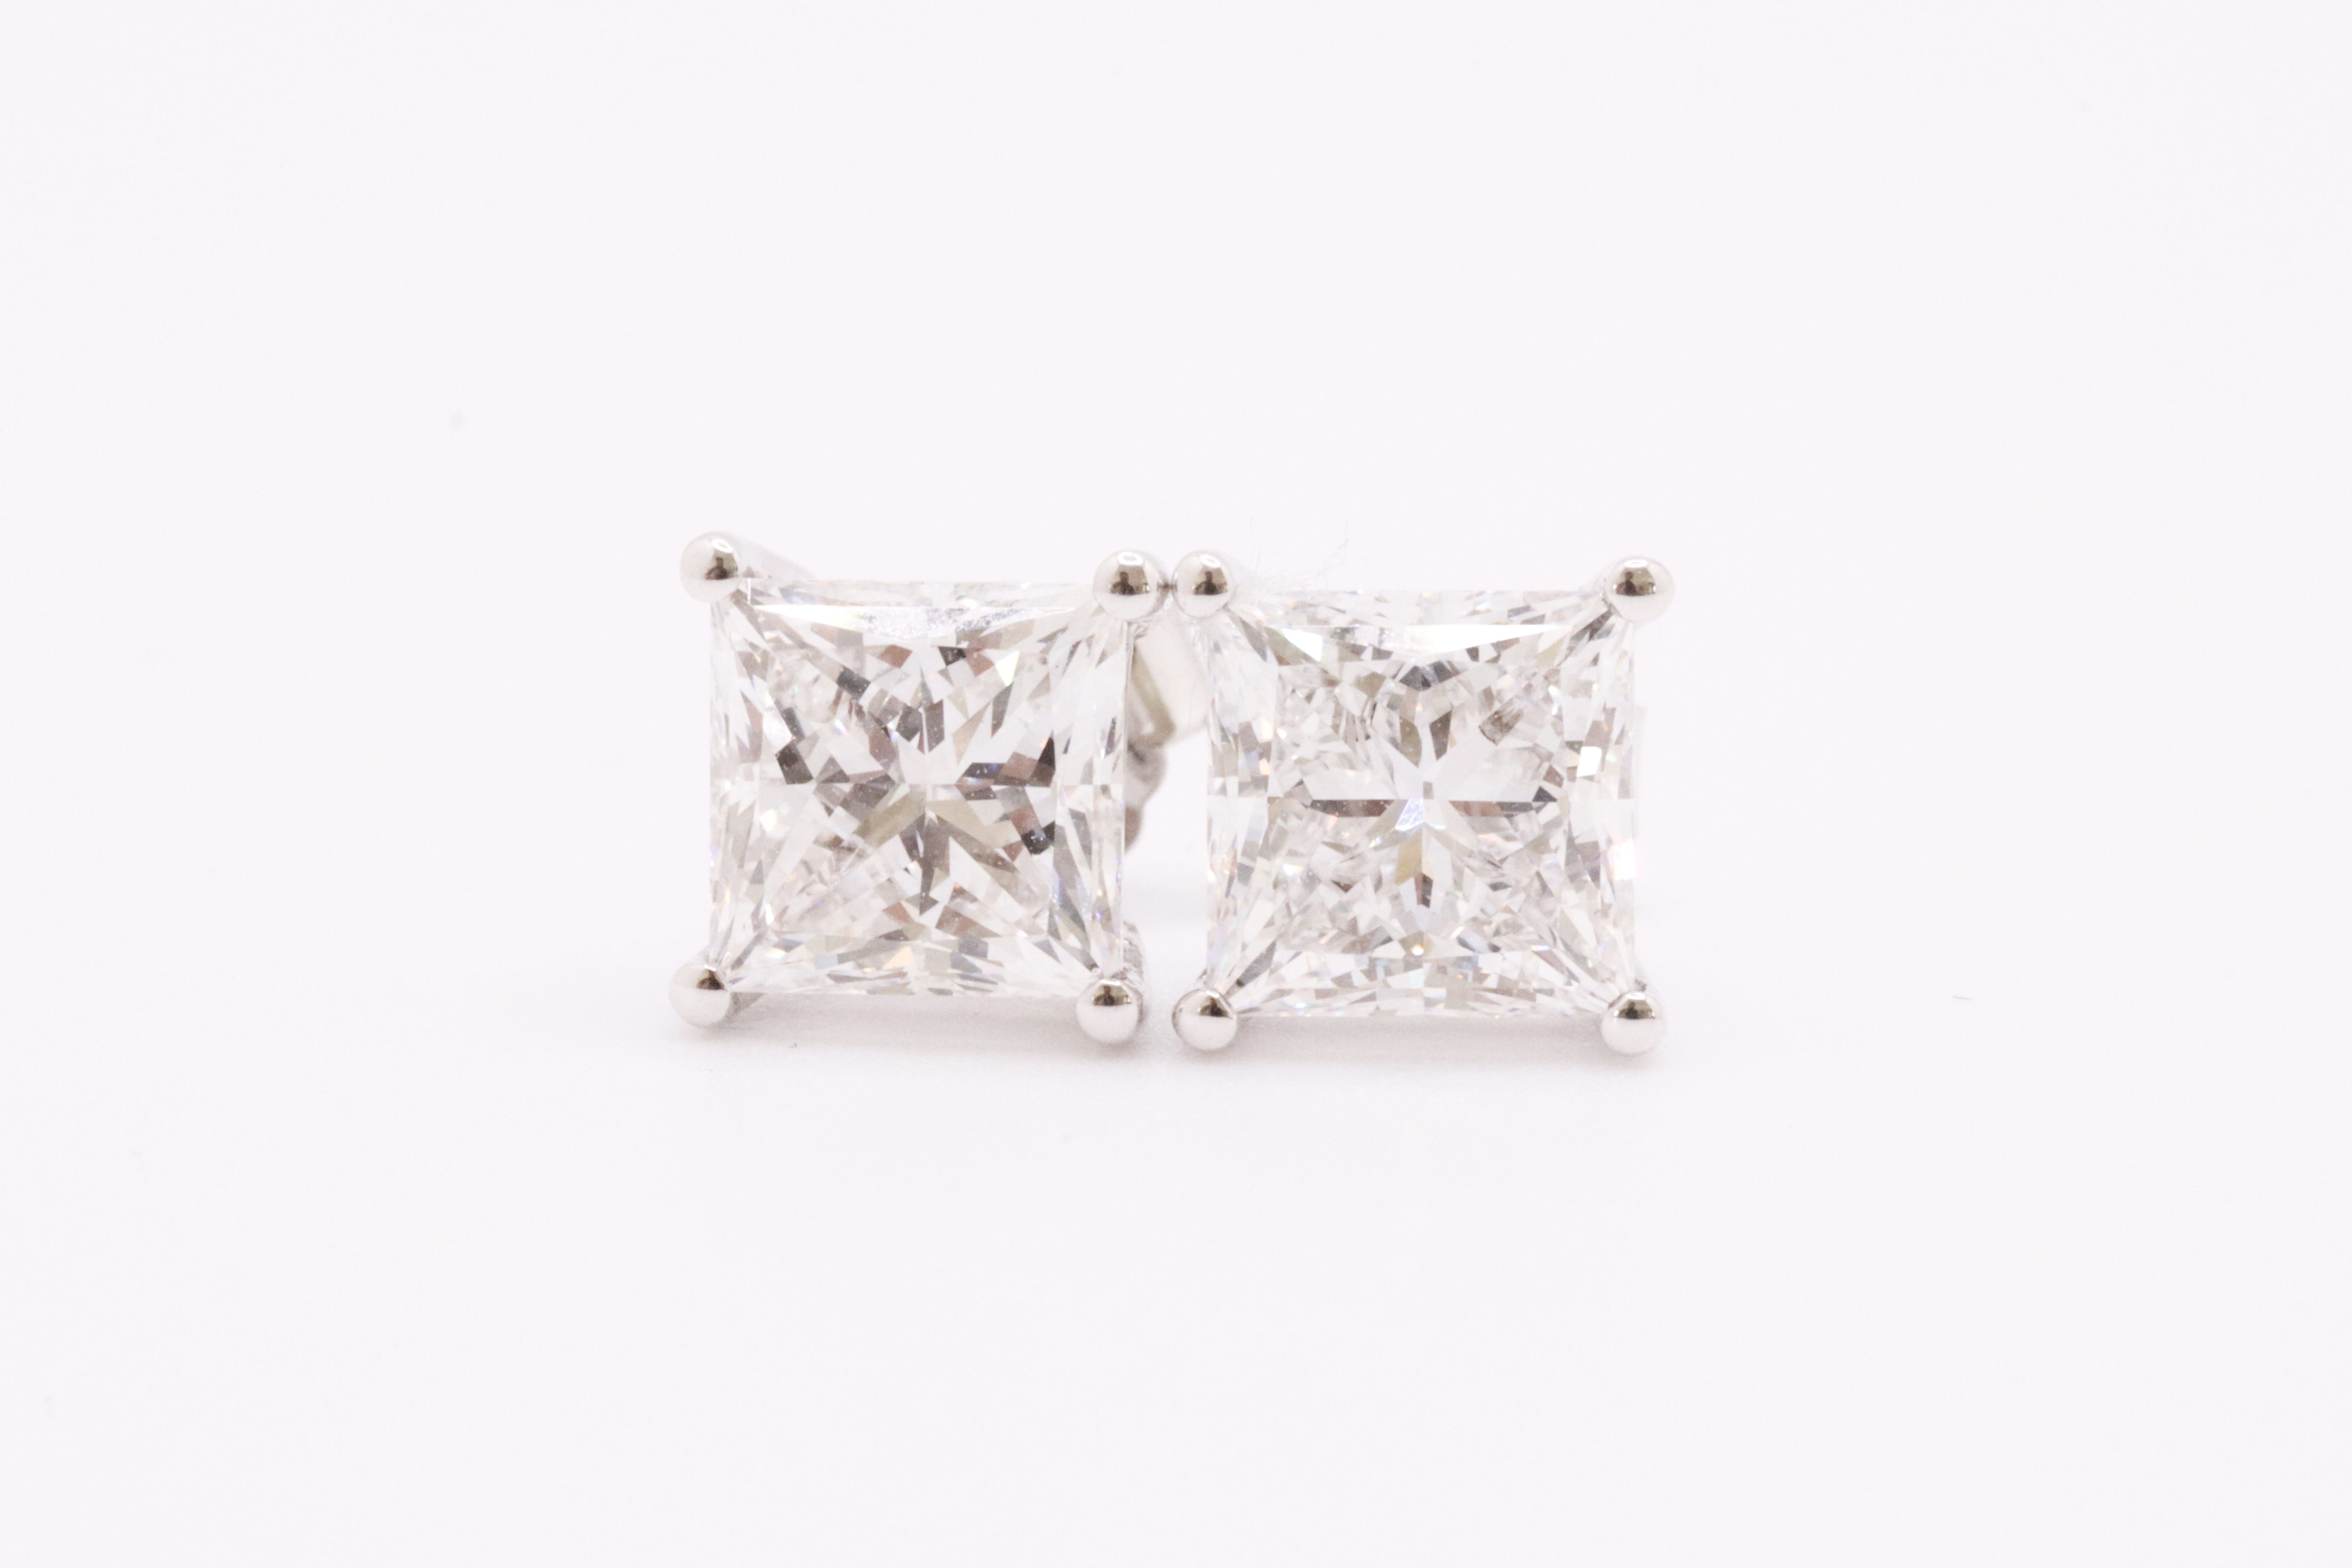 Princess Cut 4.00 Carat Diamond Earrings Set in 18kt White Gold - E Colour VVS Clarity - IGI